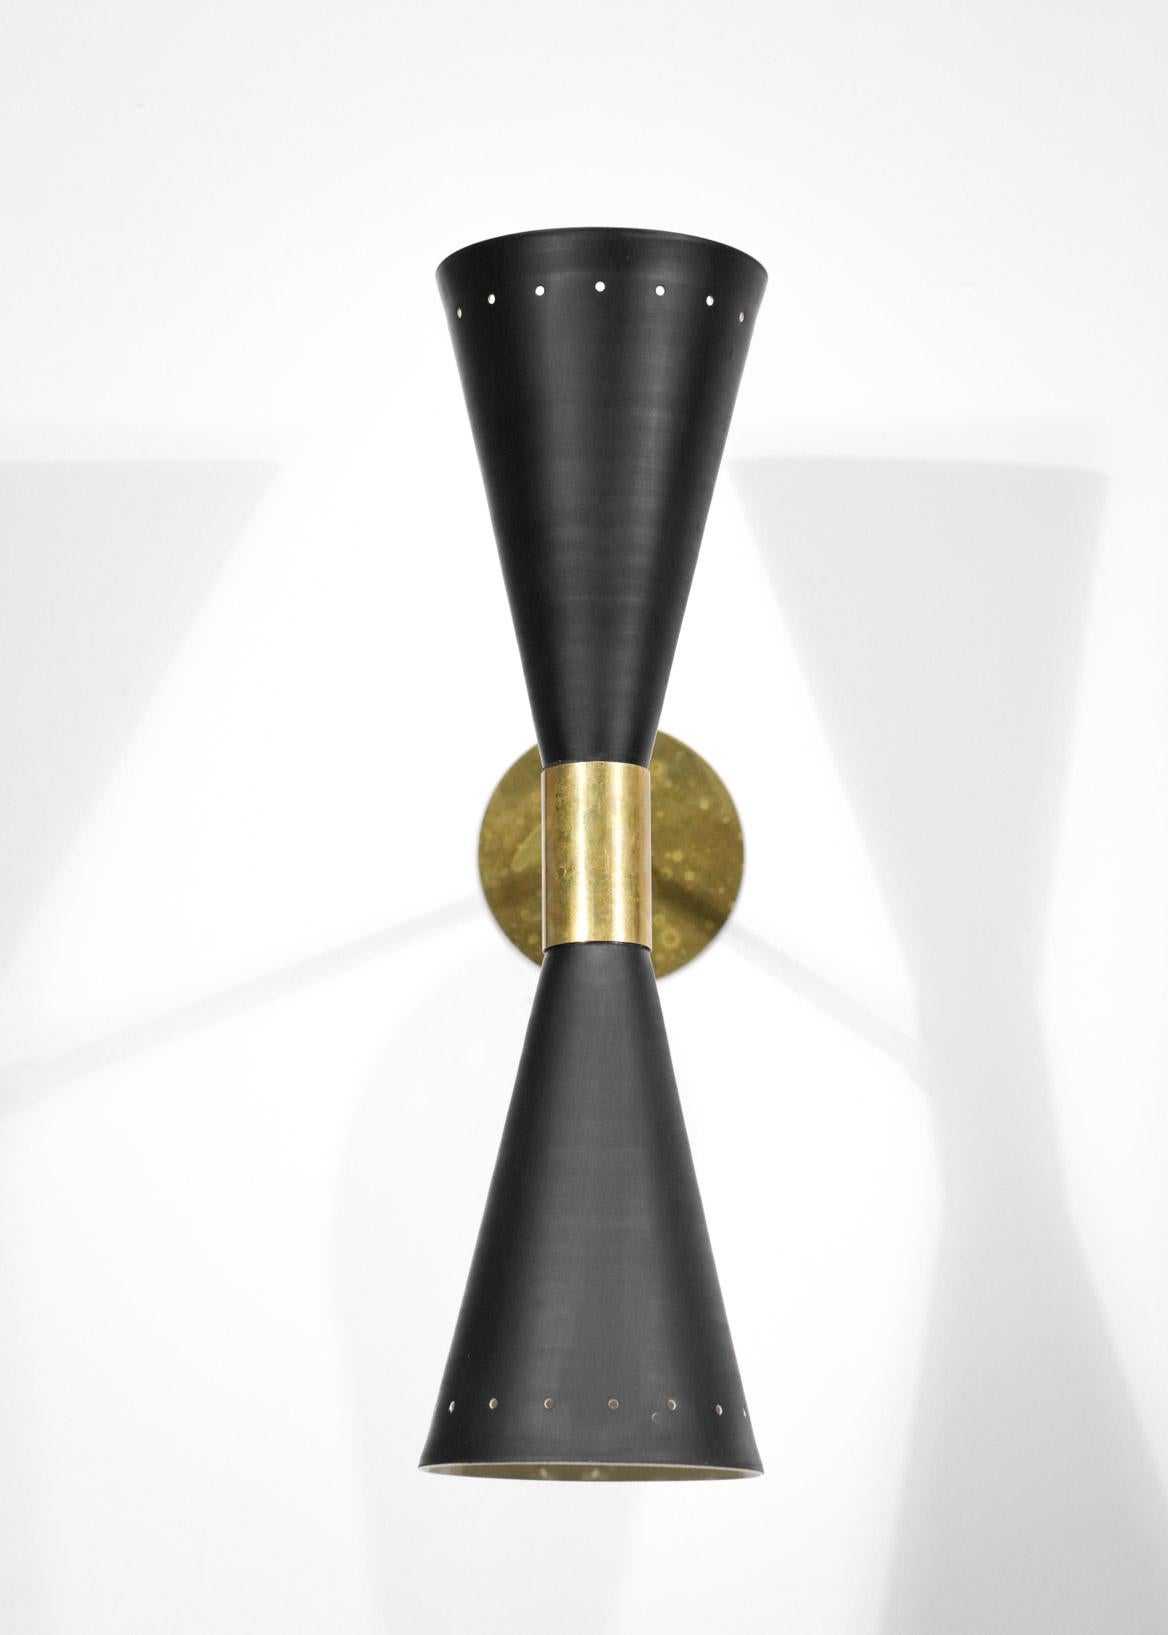 Modern Italian Sconce Large Black Diabolos Tuba in Style Stilnovo ML136 For Sale 4